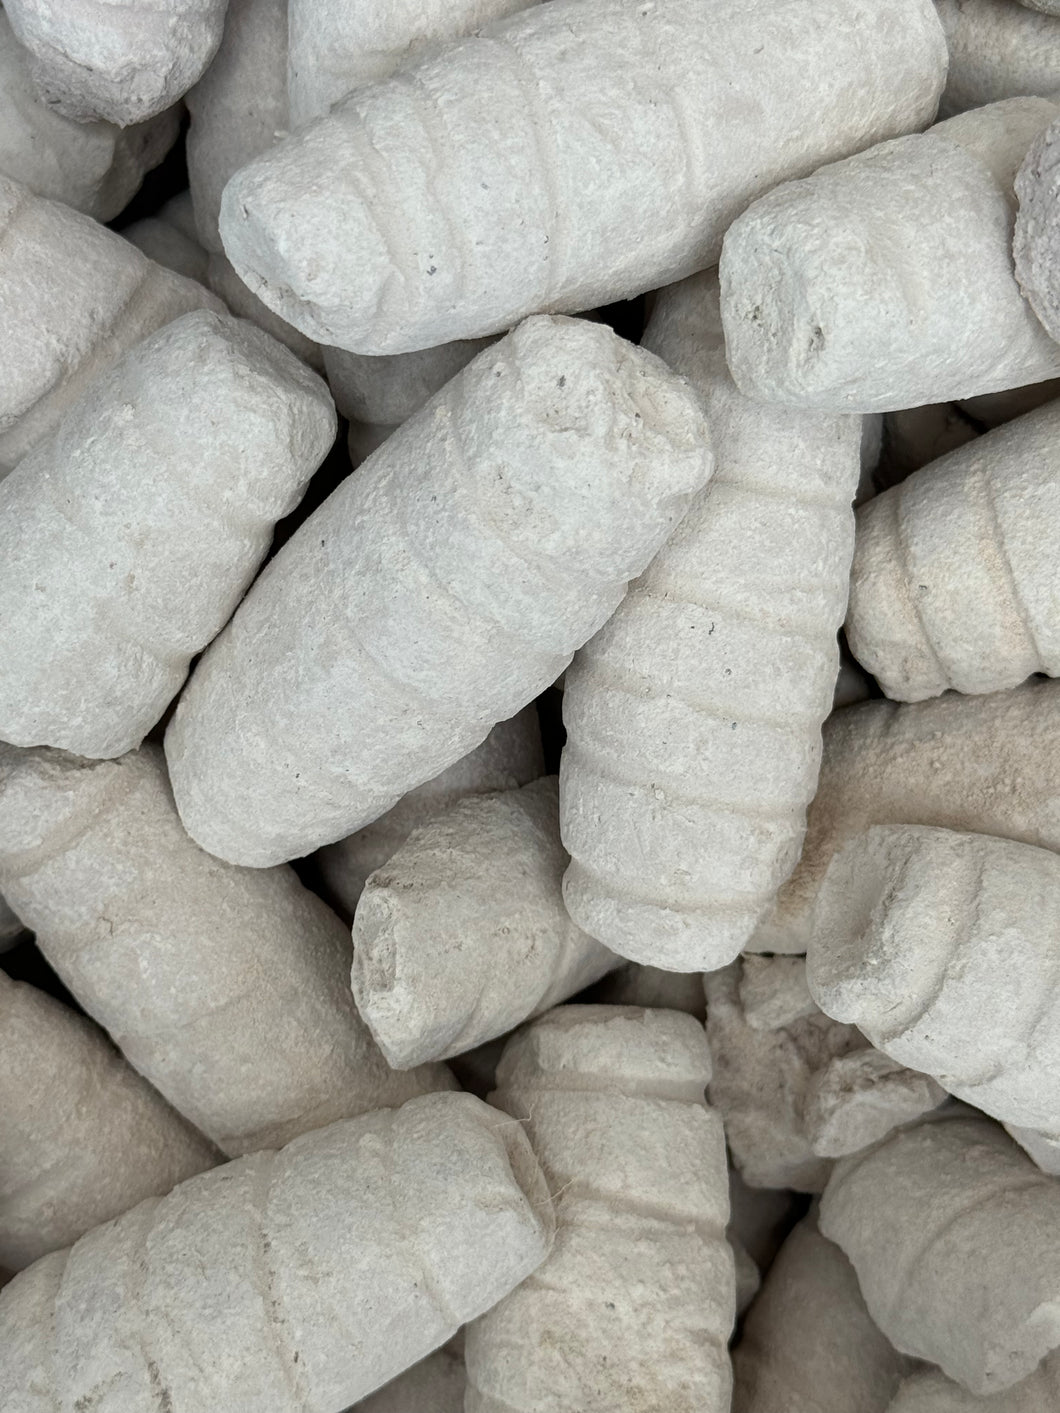 Purelyagro Ayilo Edible Clay Bentonite Kaolin Calaba - Imported from Nigeria